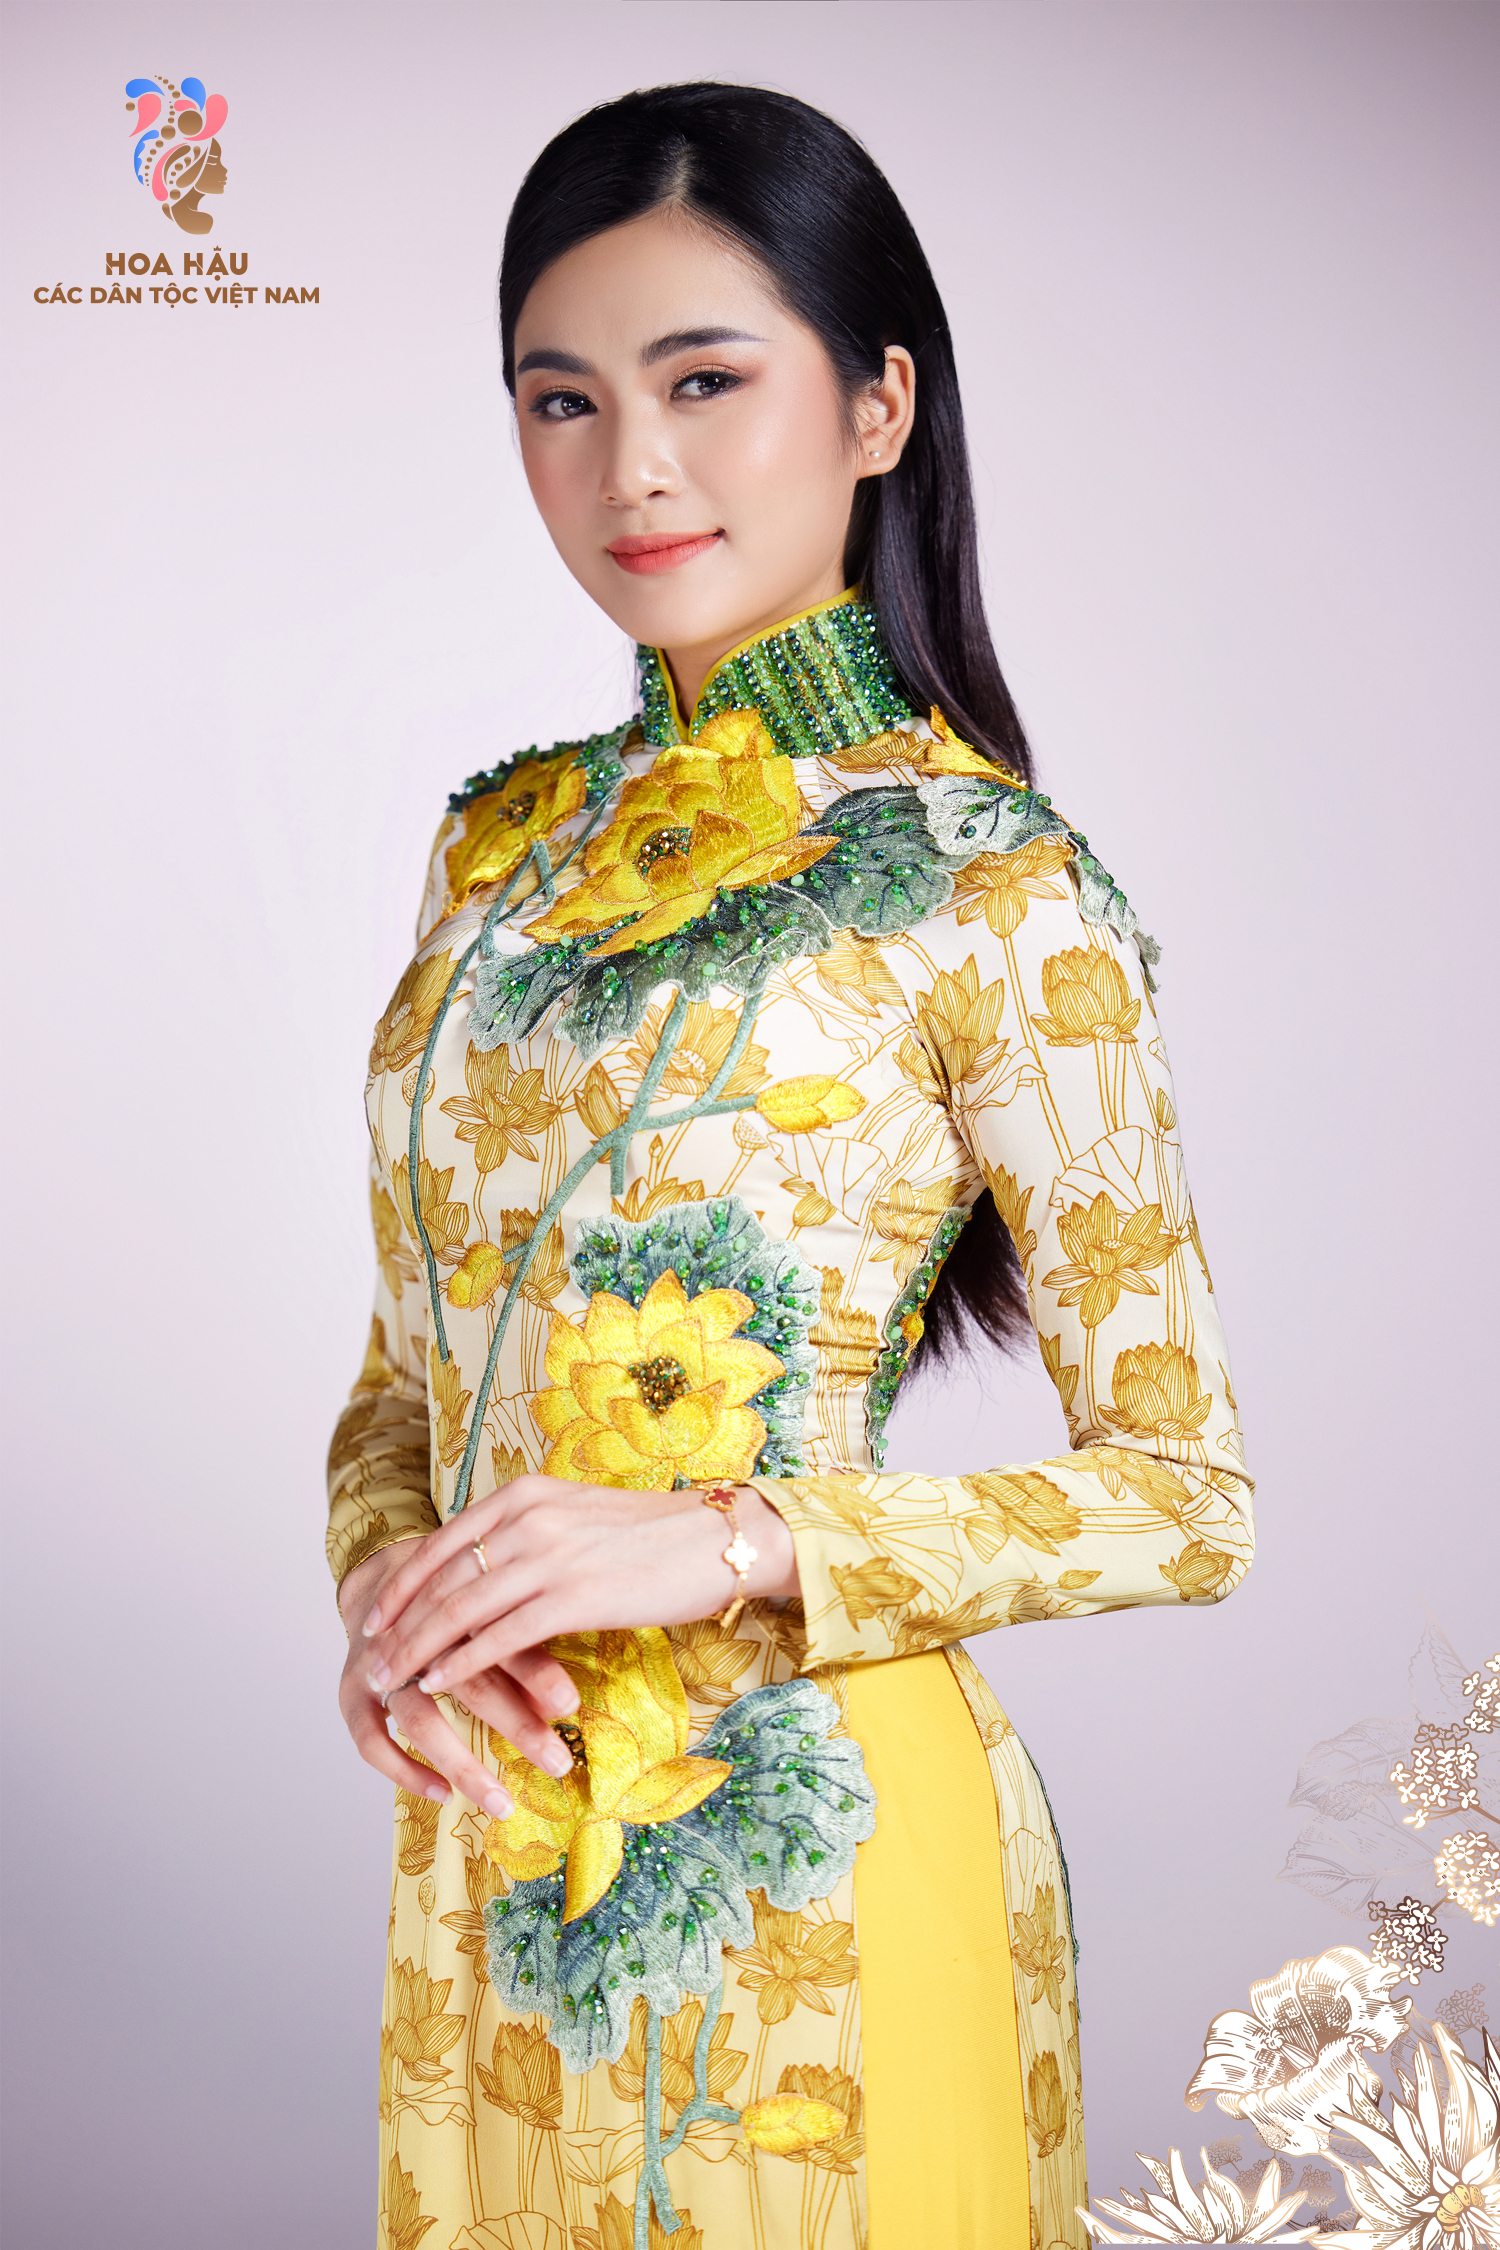 30 thí sinh Hoa hậu các dân tộc Việt Nam duyên dáng trong trang phục truyền thống - Ảnh 3.